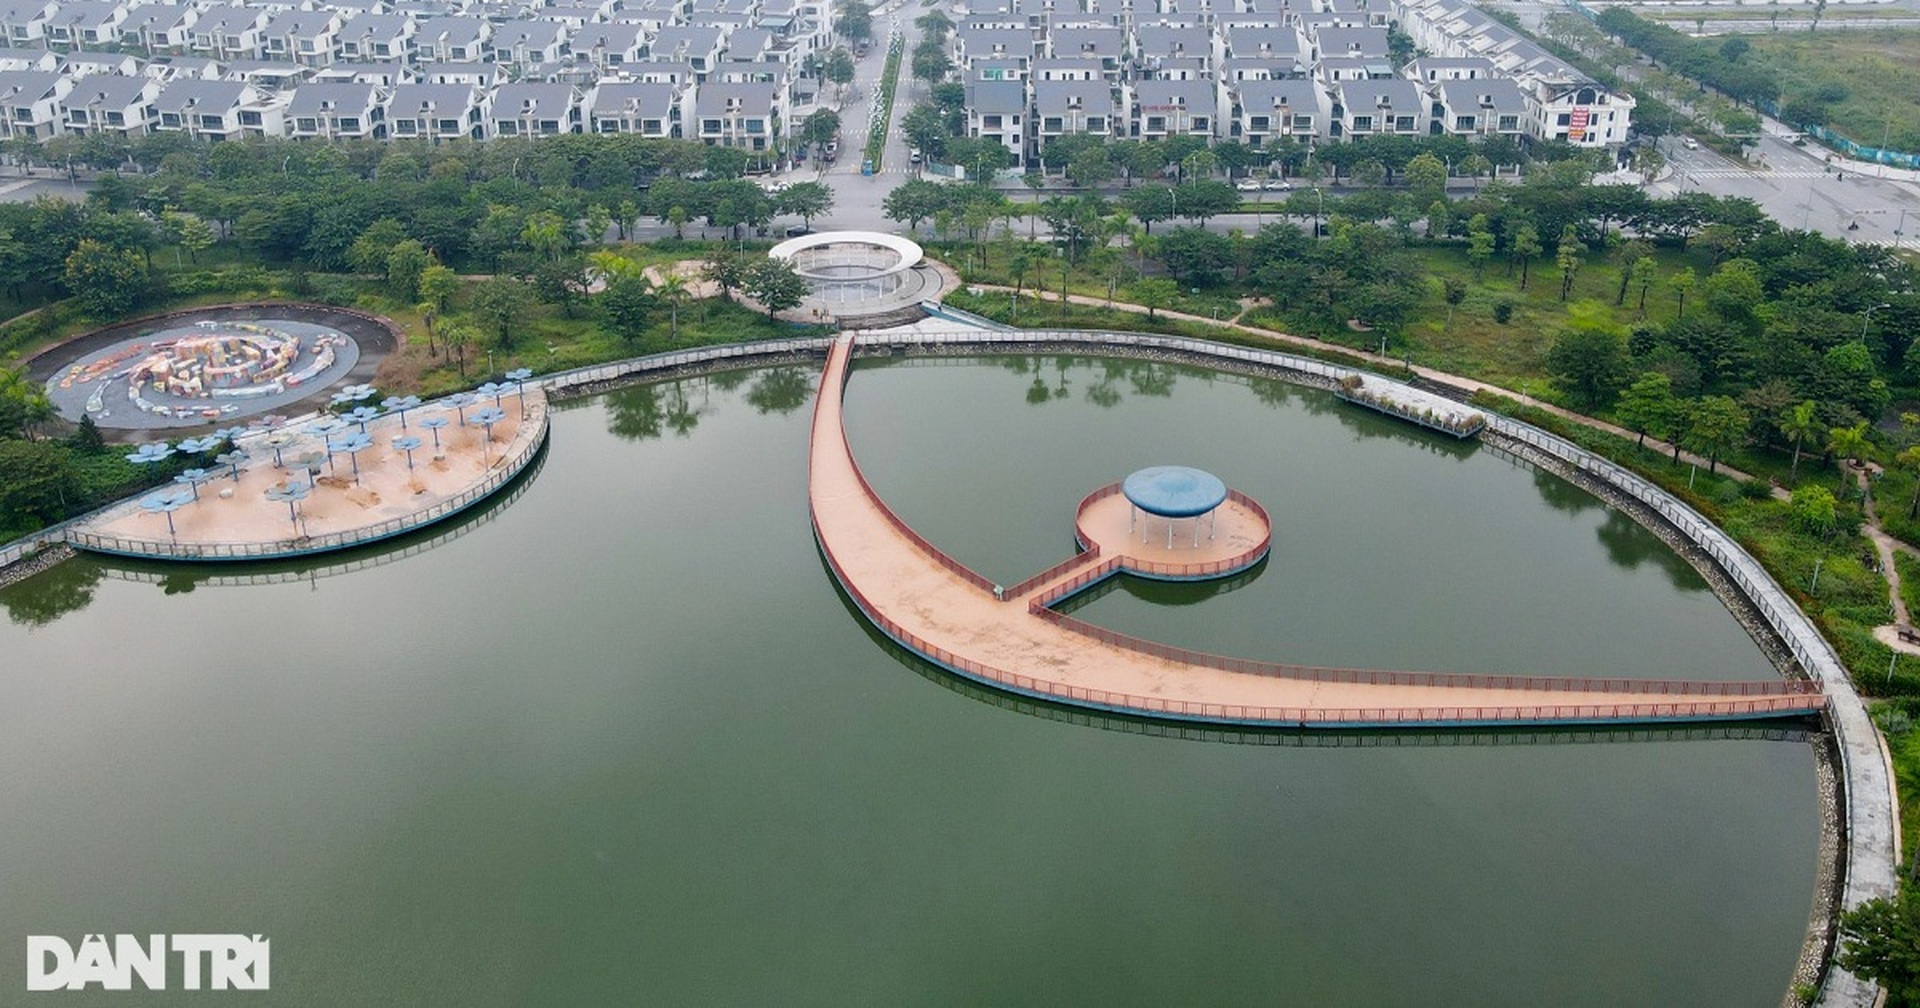 Công viên Thiên văn học hơn 260 tỷ đồng xây dựng sai quy hoạch tại Hà Nội - 15